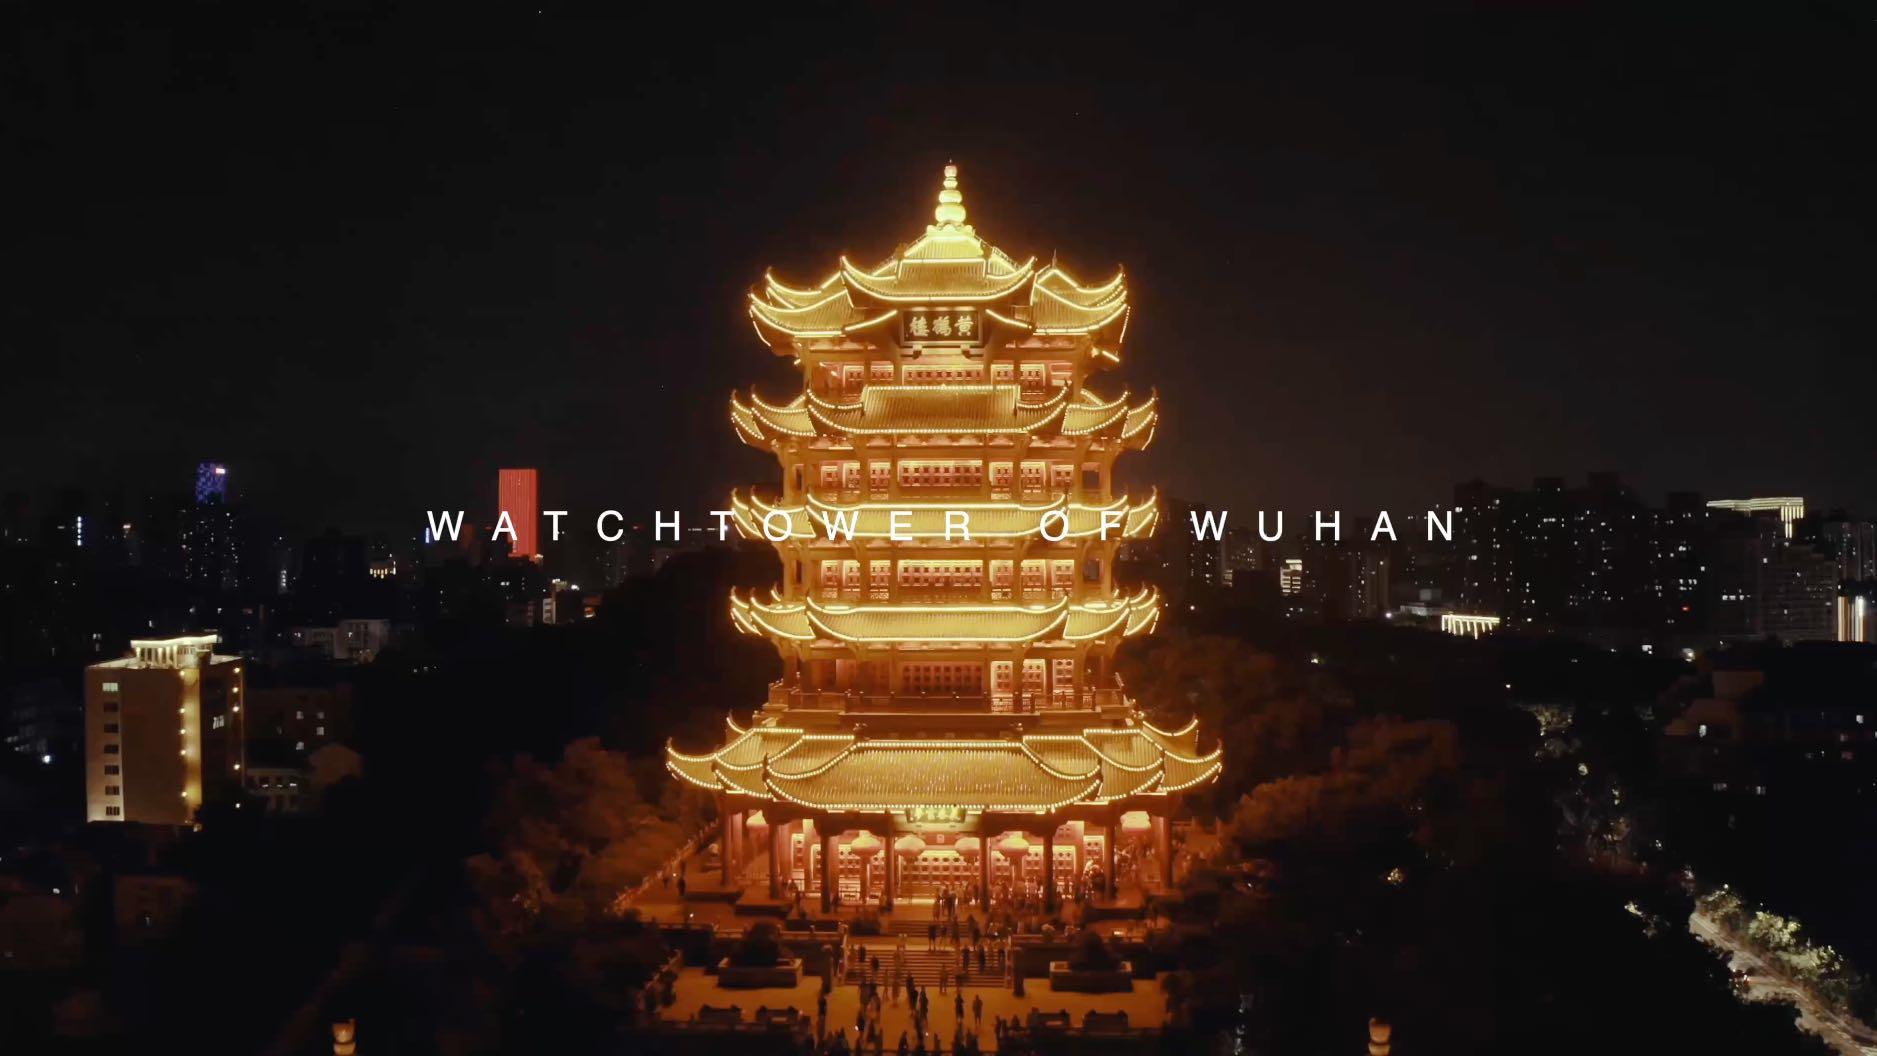 Watchtower of Wuhan 武汉瞭望塔